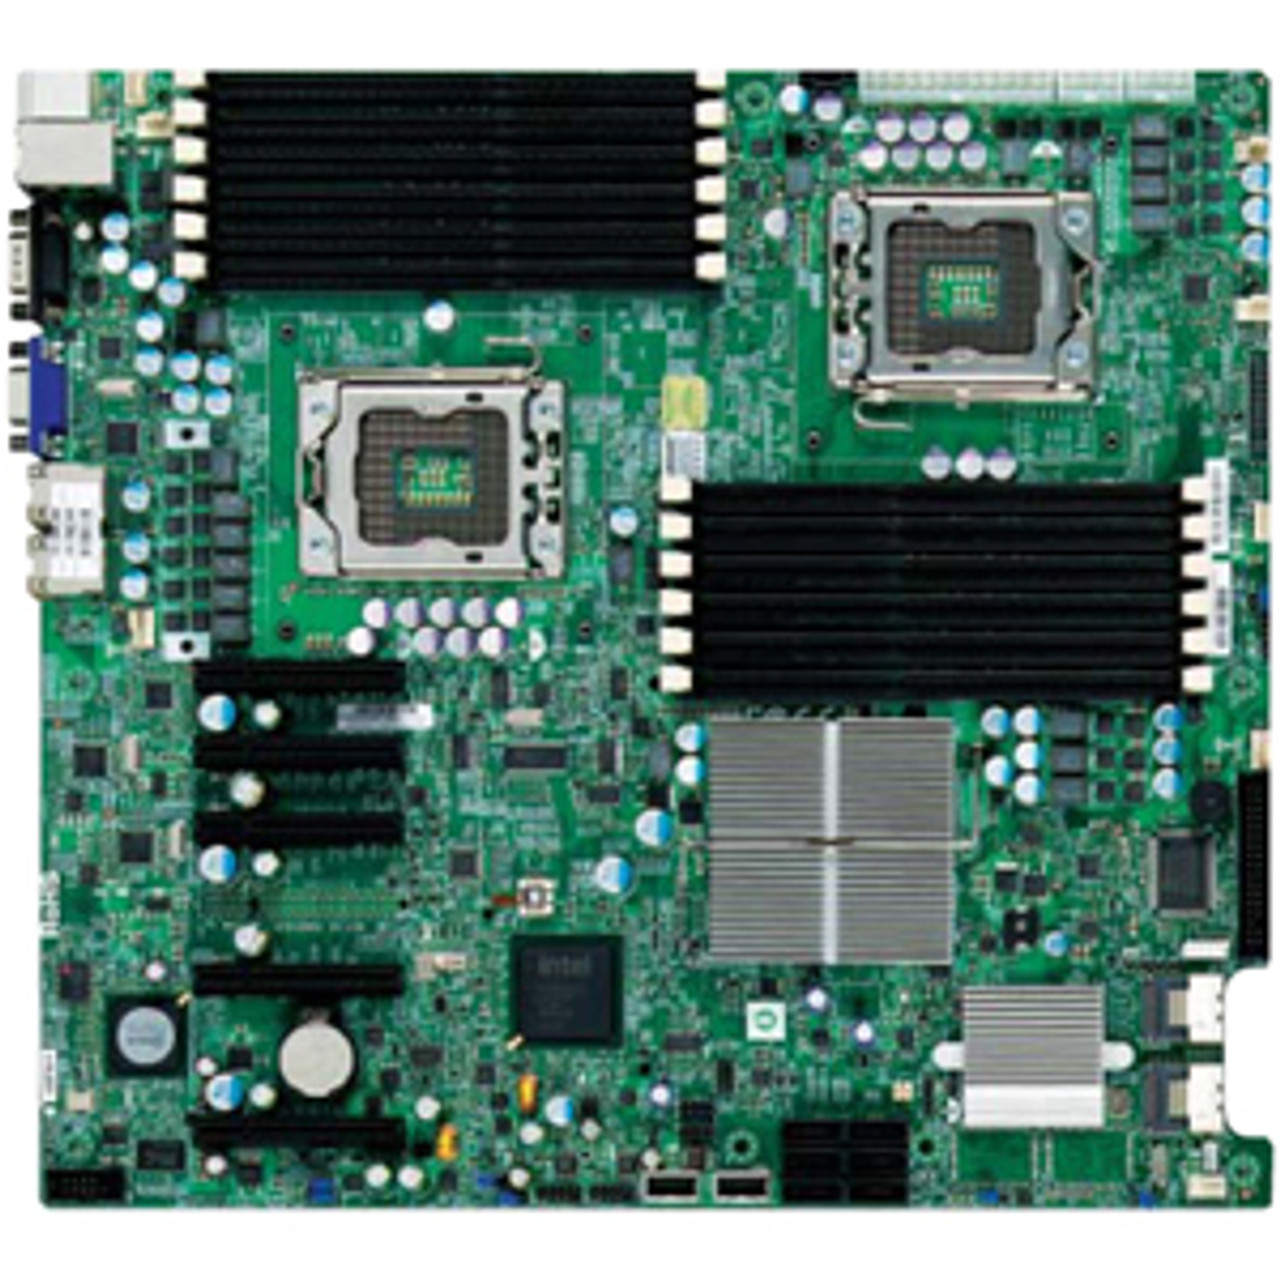 スーパーマイクロ LGA1366 Xeon/Intel 5520 サーバーマザーボード